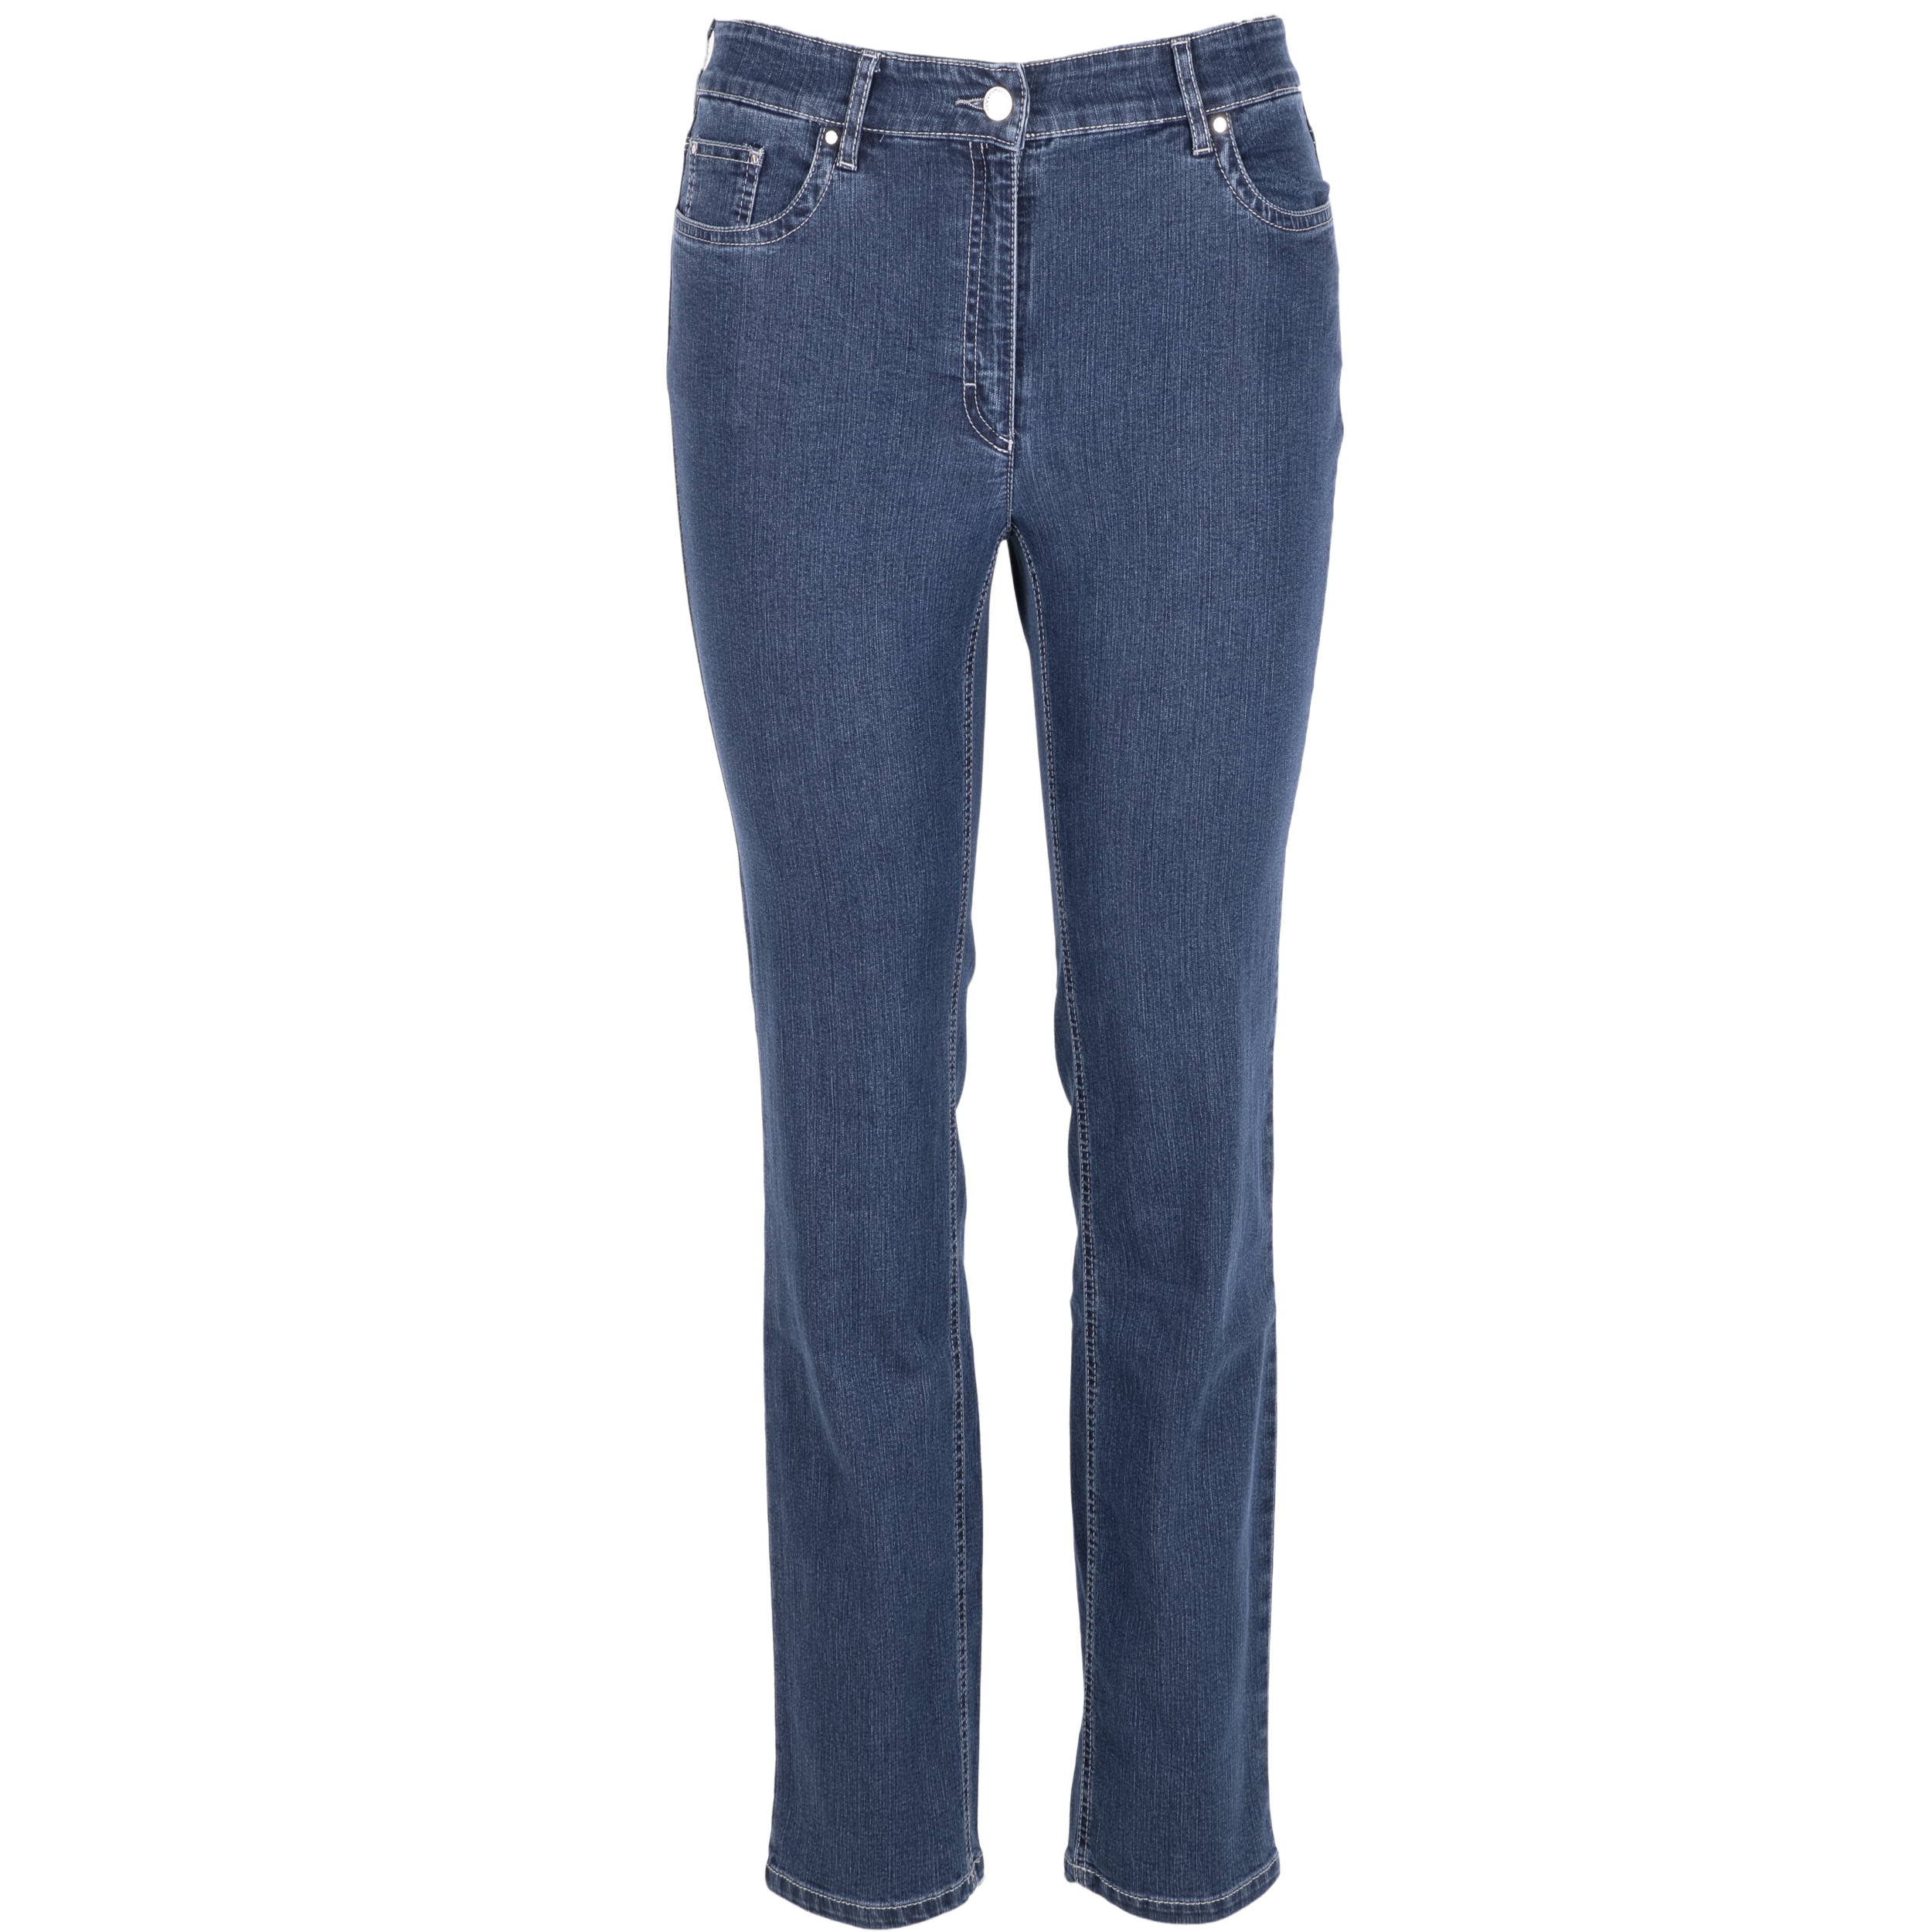 Zerres Damen Jeans Cora comfort S 40 blau